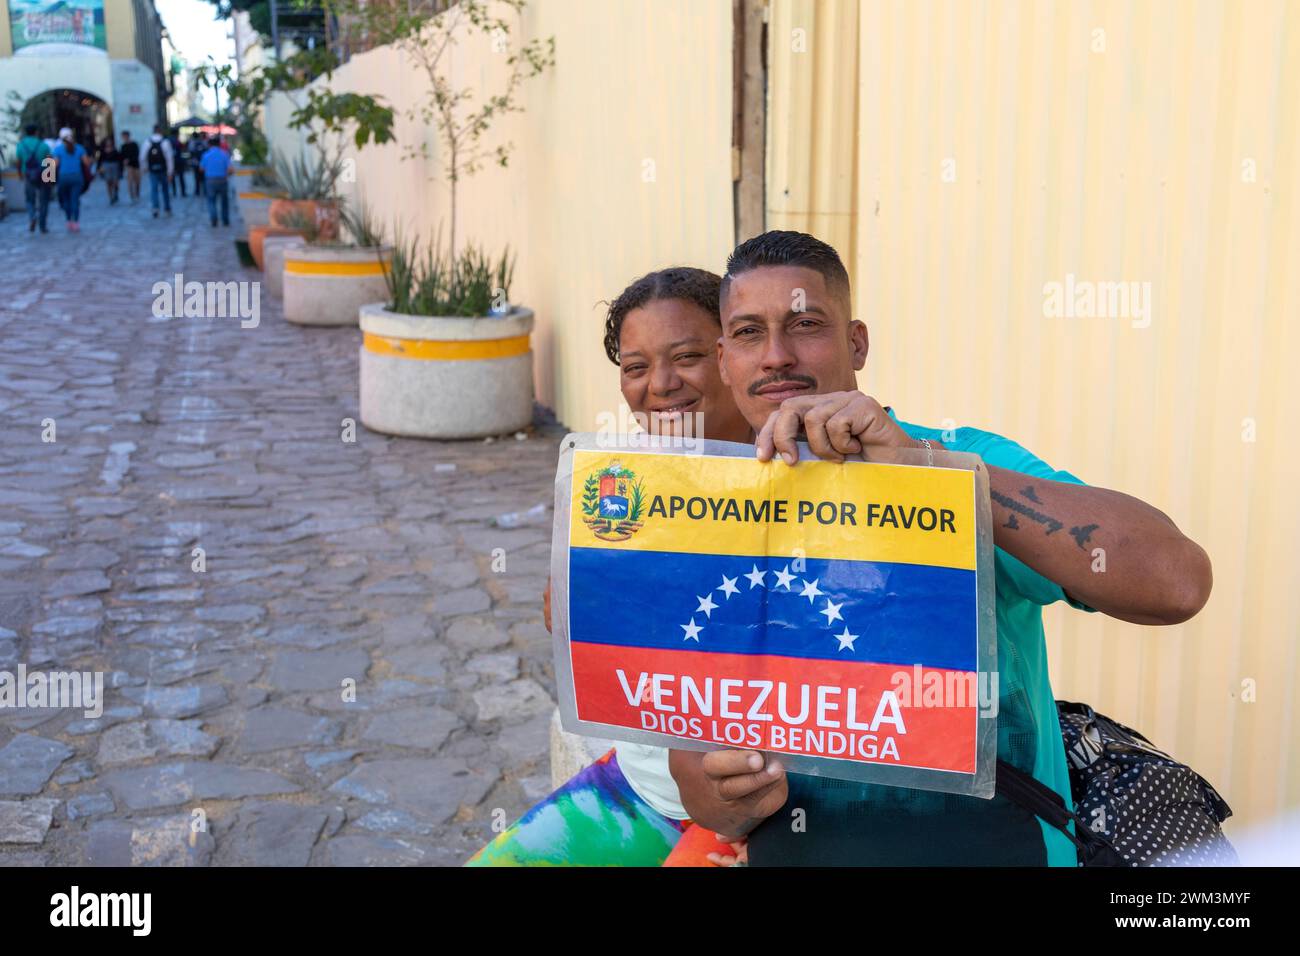 Oaxaca, Messico - Un uomo e una donna che cercano di farsi strada dal Venezuela agli Stati Uniti hanno un cartello che chiede aiuto. Foto Stock